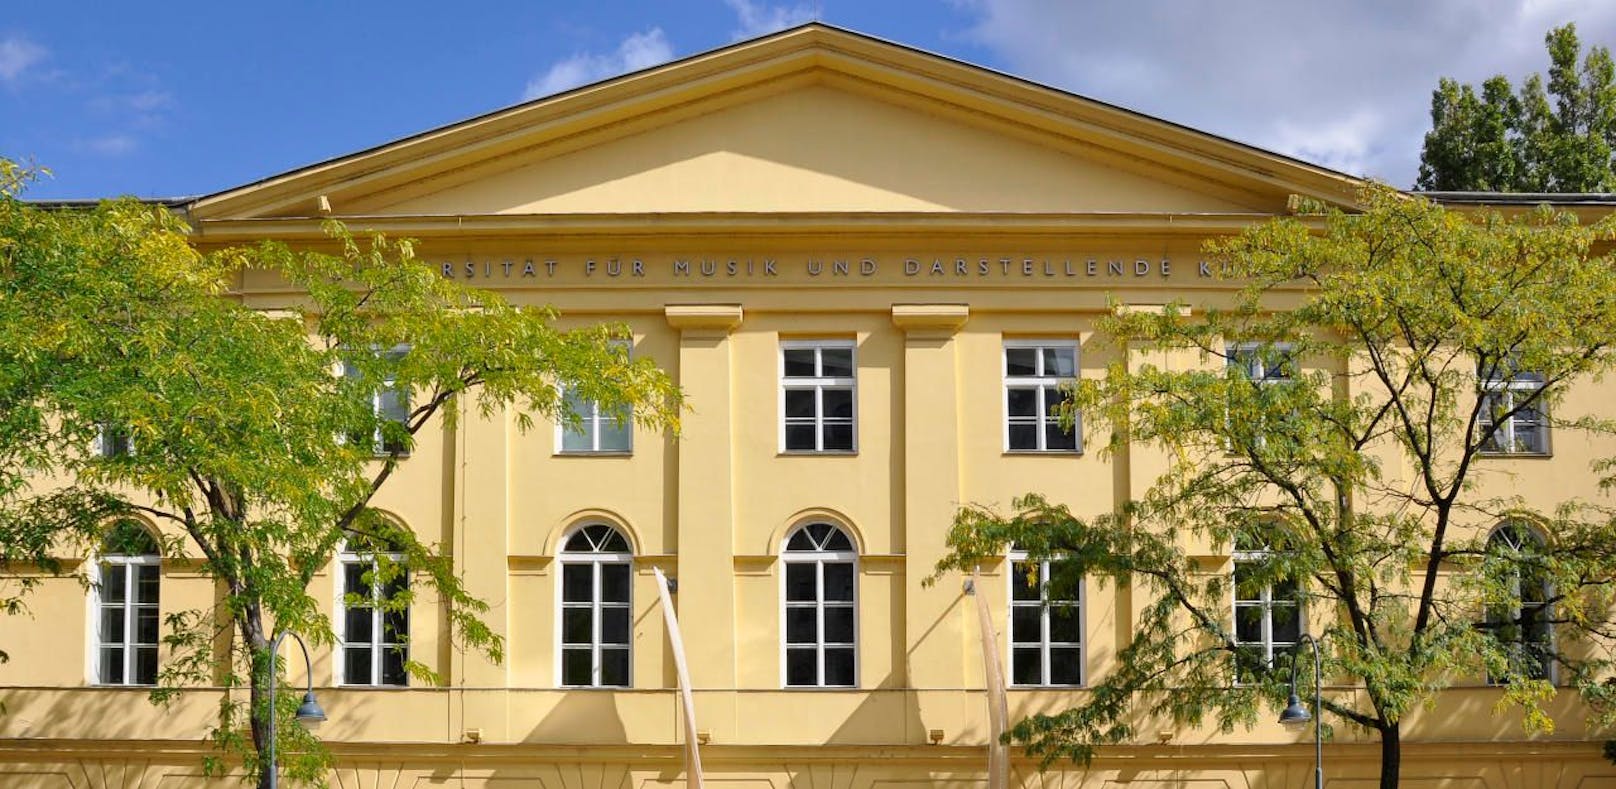 Die Universität für Musik und darstellende Kunst Wien (mdw) belegt 2019 den ersten Platz im weltweiten Universitäts-Ranking.